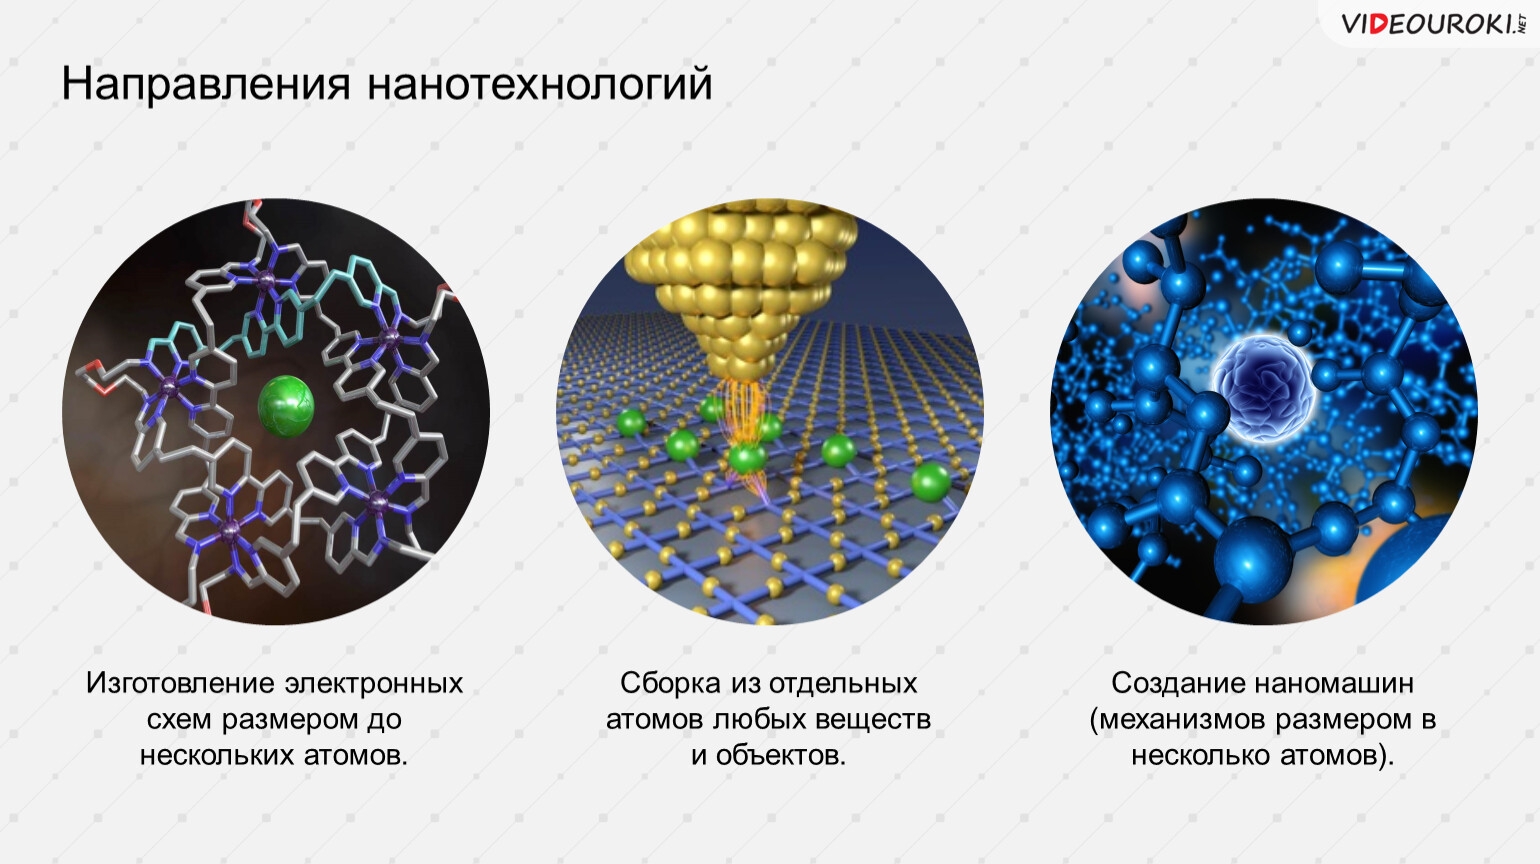 Почему нанотехнологии. Направления нанотехнологий. Нанотехнологии схема. Нанотехнологии презентация. Основные направления нанотехнологии.